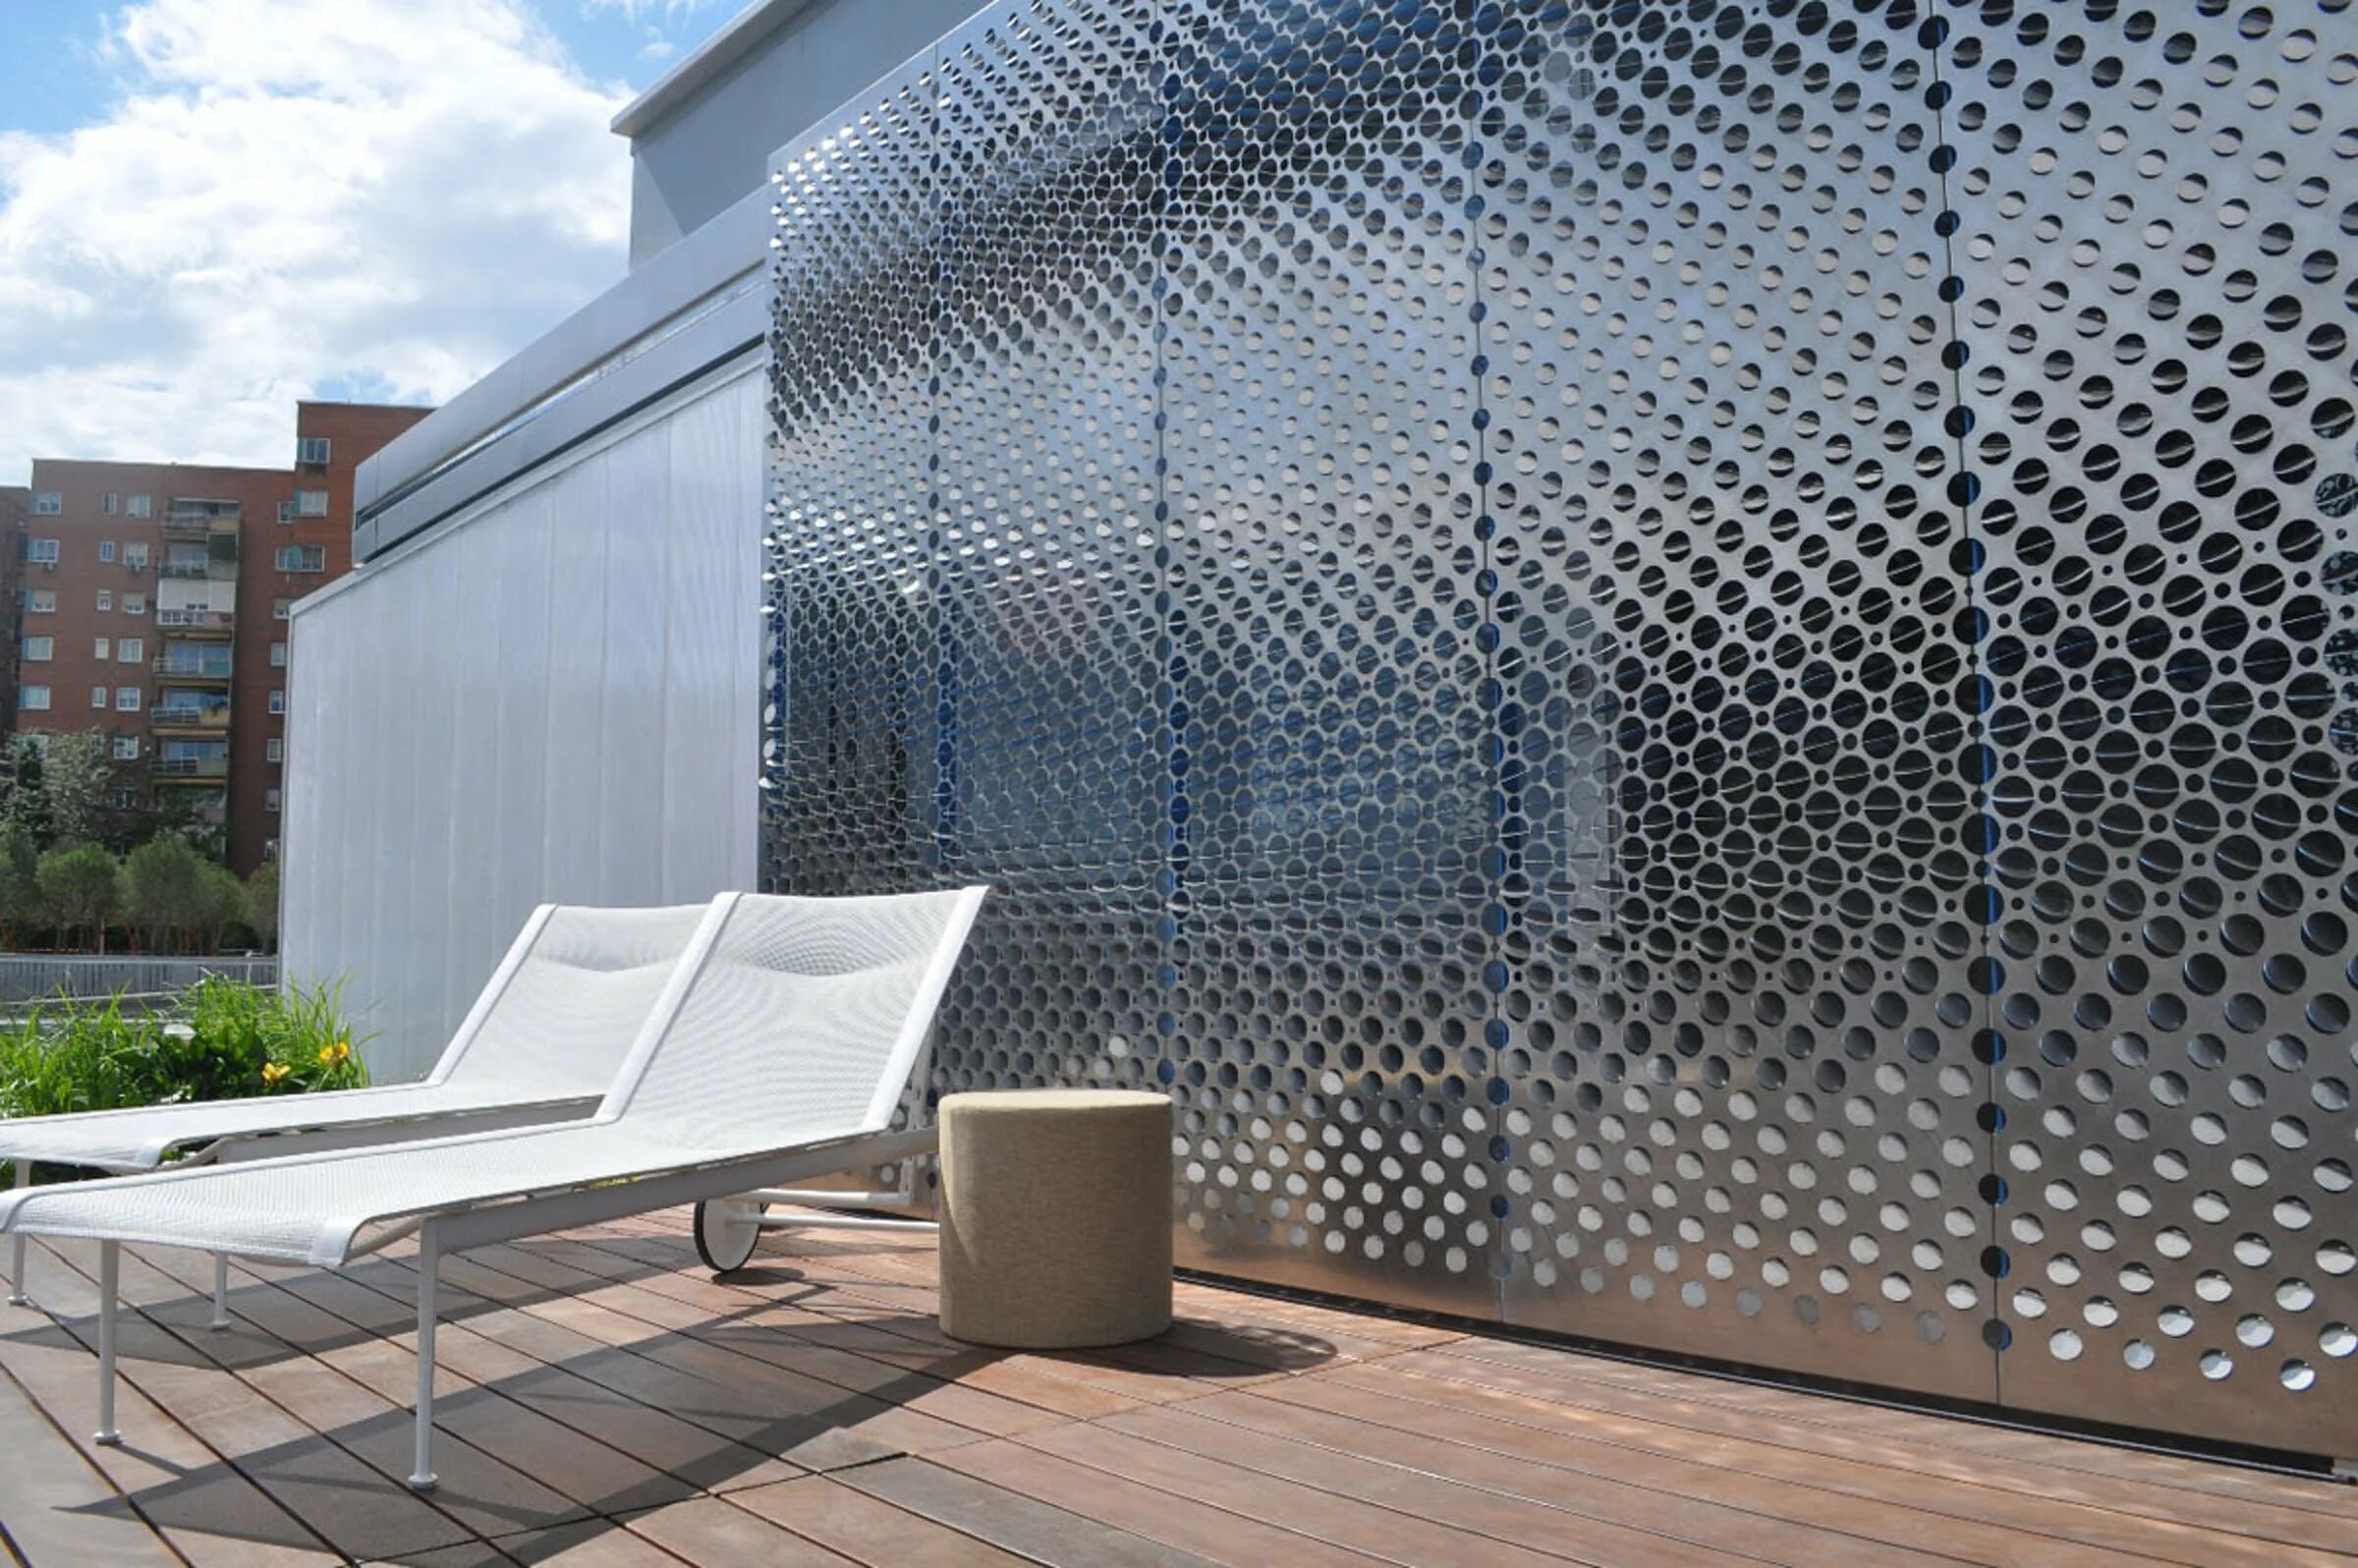 Aqua Steel панели. Perforated Metal facade Panel. Aqua Metall панели. Metal Mesh facade.